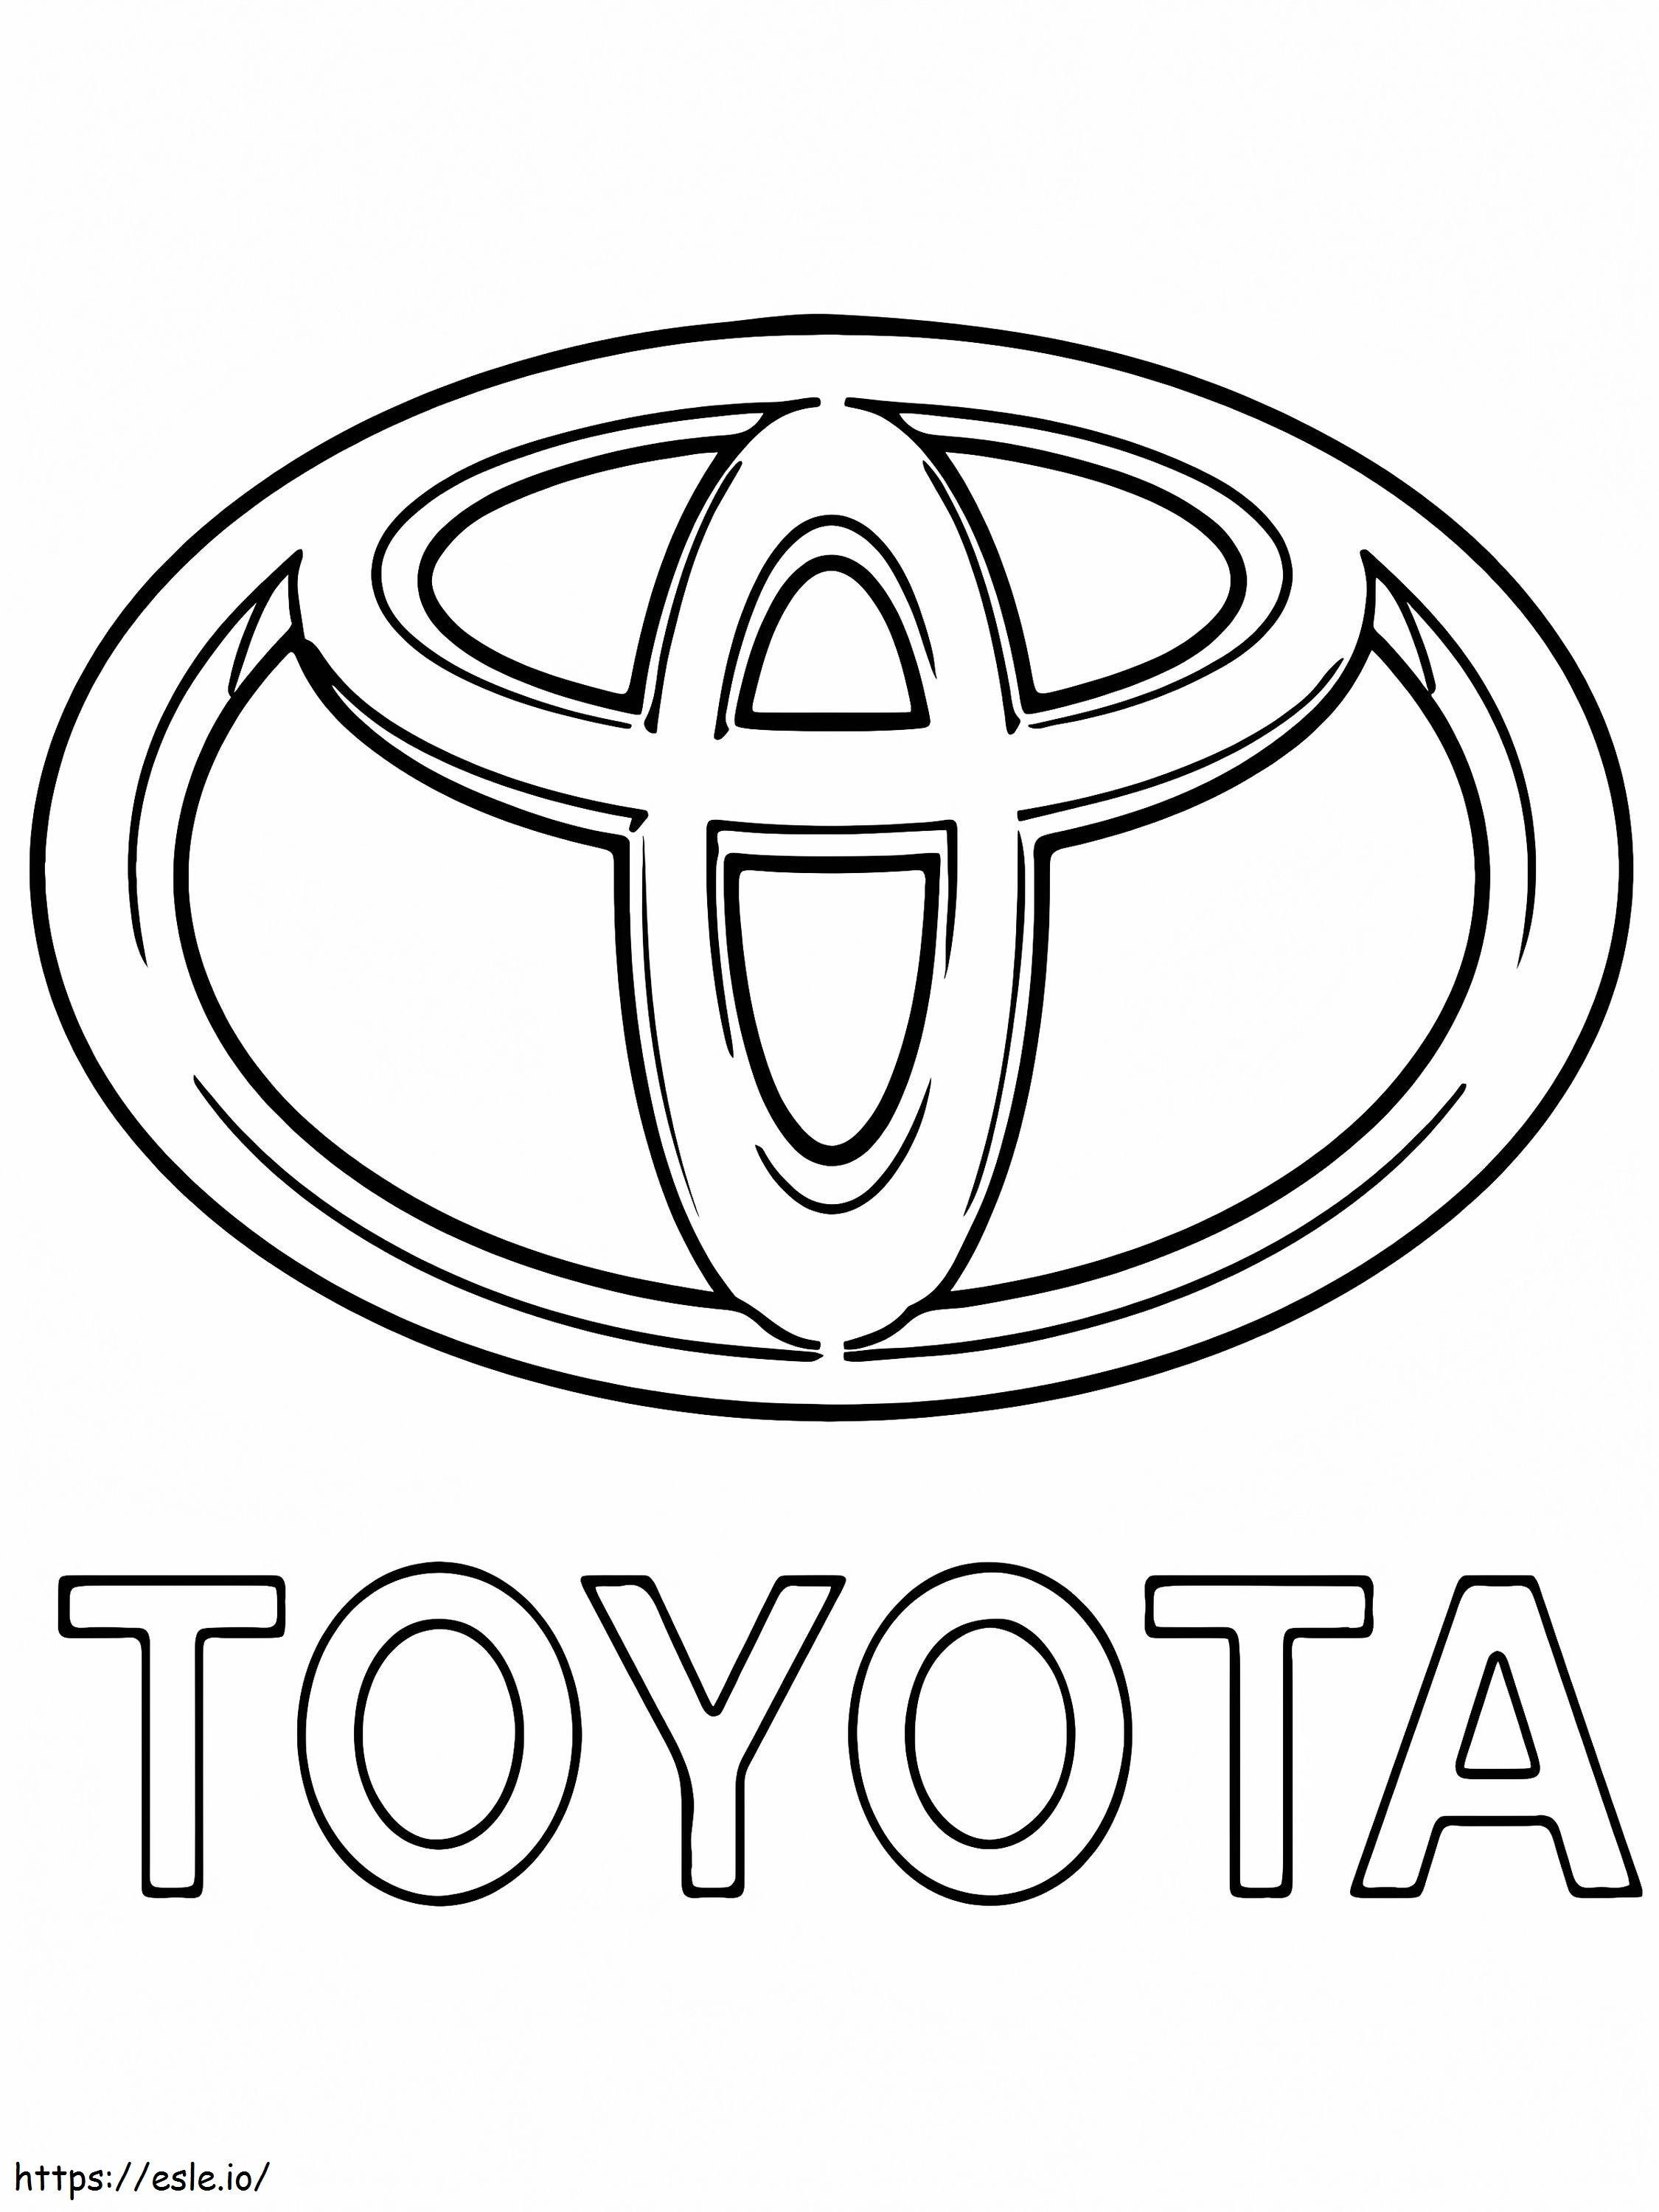 Logo-ul mașinii Toyota de colorat